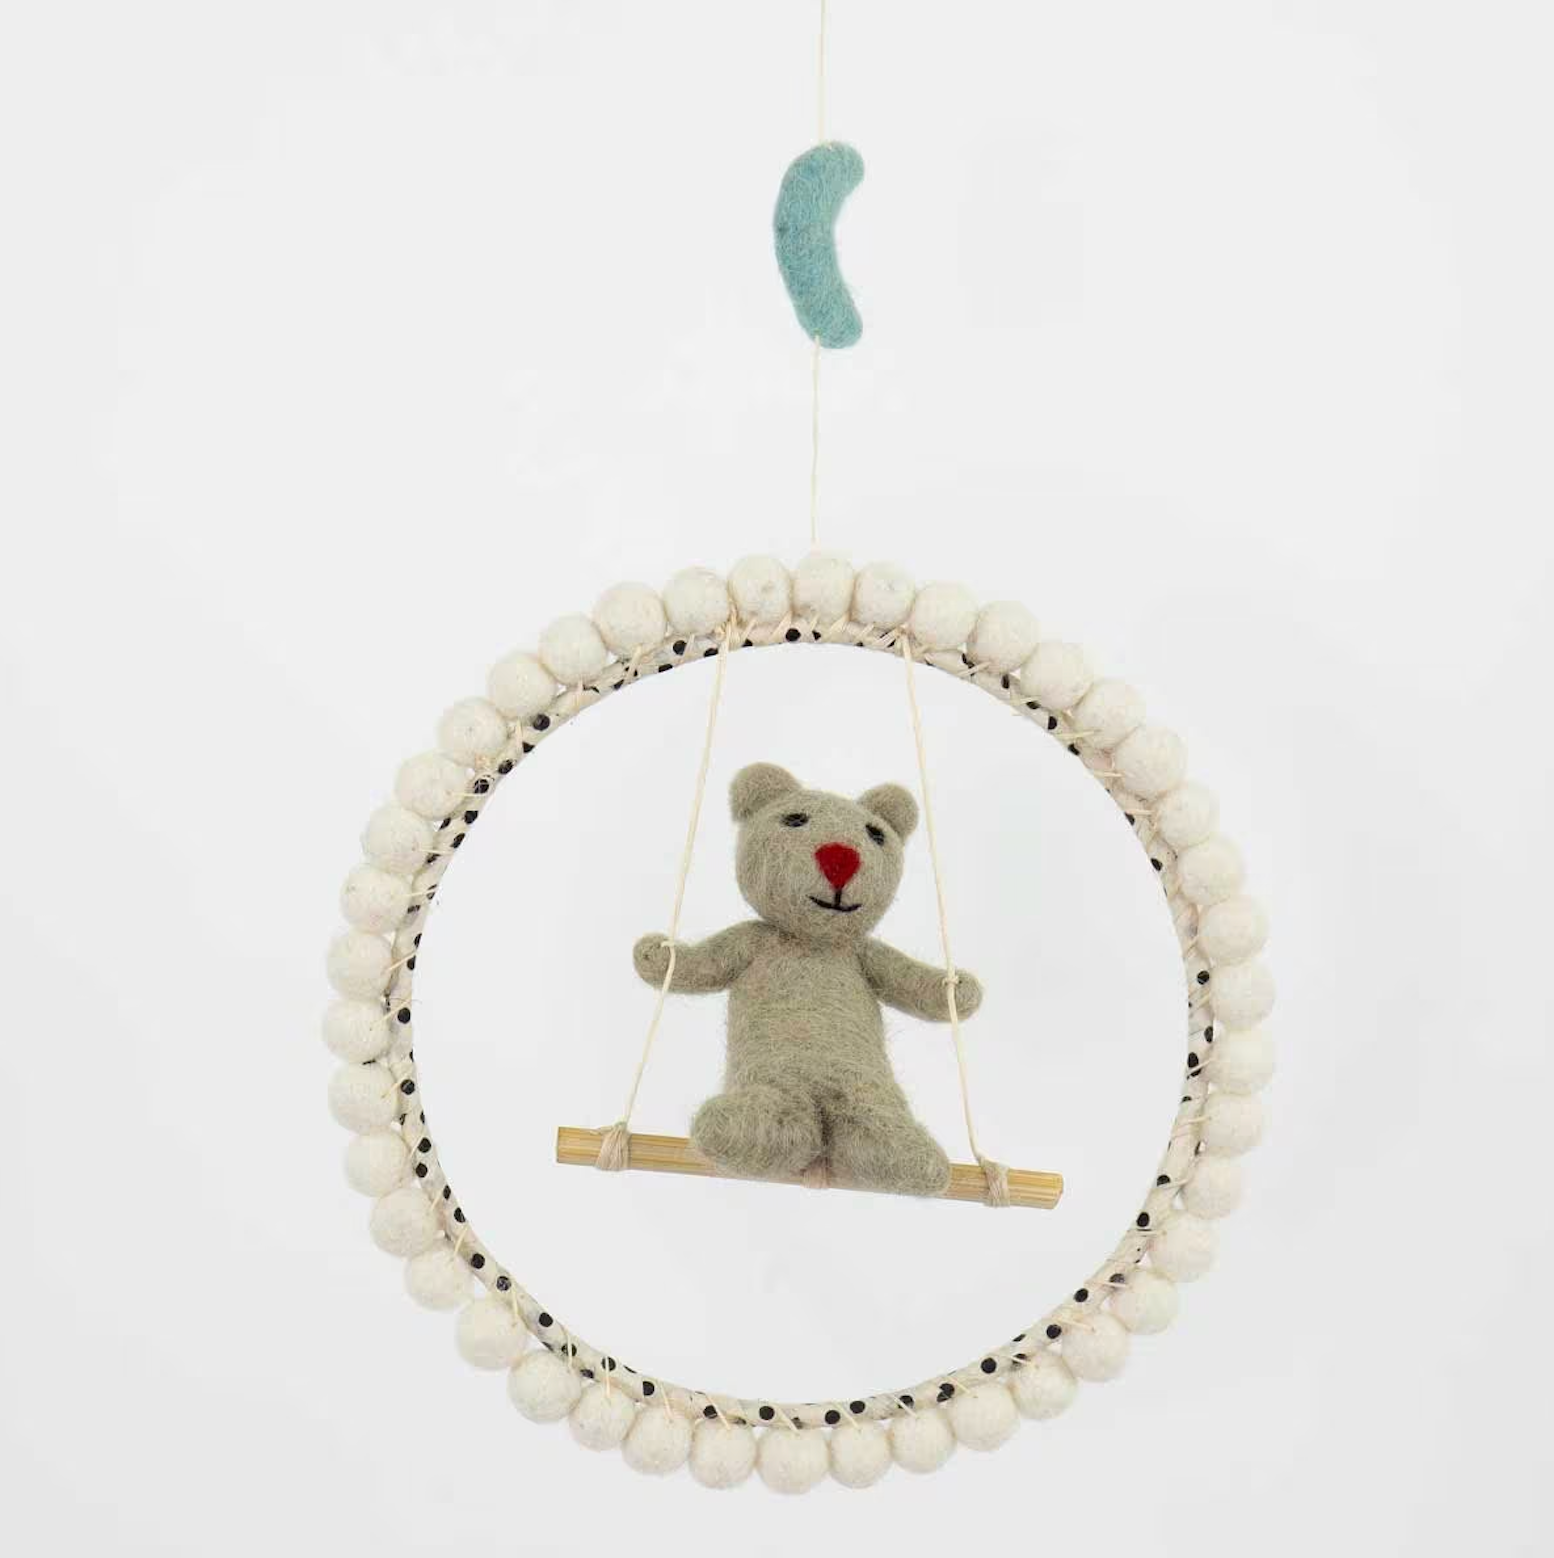 Mobile, He Swings, Bear on Swing, Handmade in wool, 18cm - in giftbox